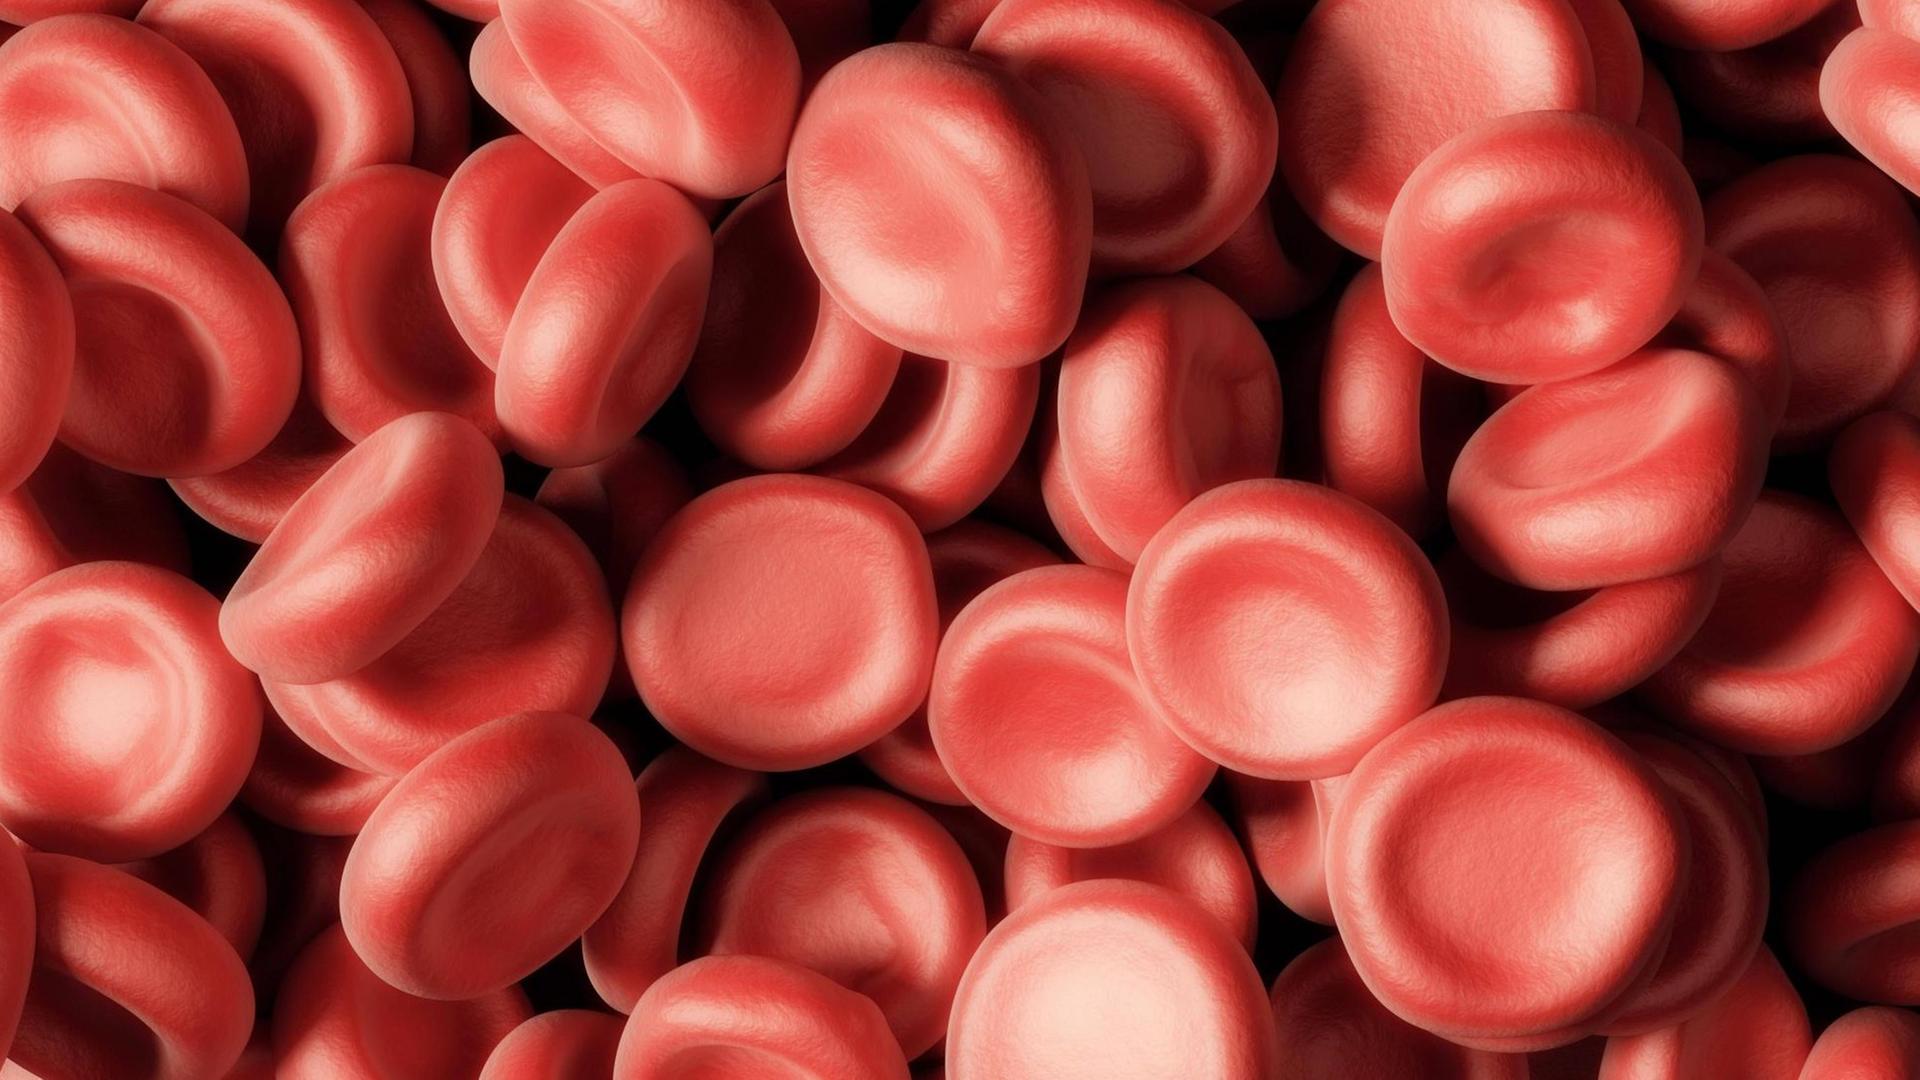 Großaufnahme roter Blutzellen, die in dieser Vergrößerung wie aufgehäufte Dragees wirken.